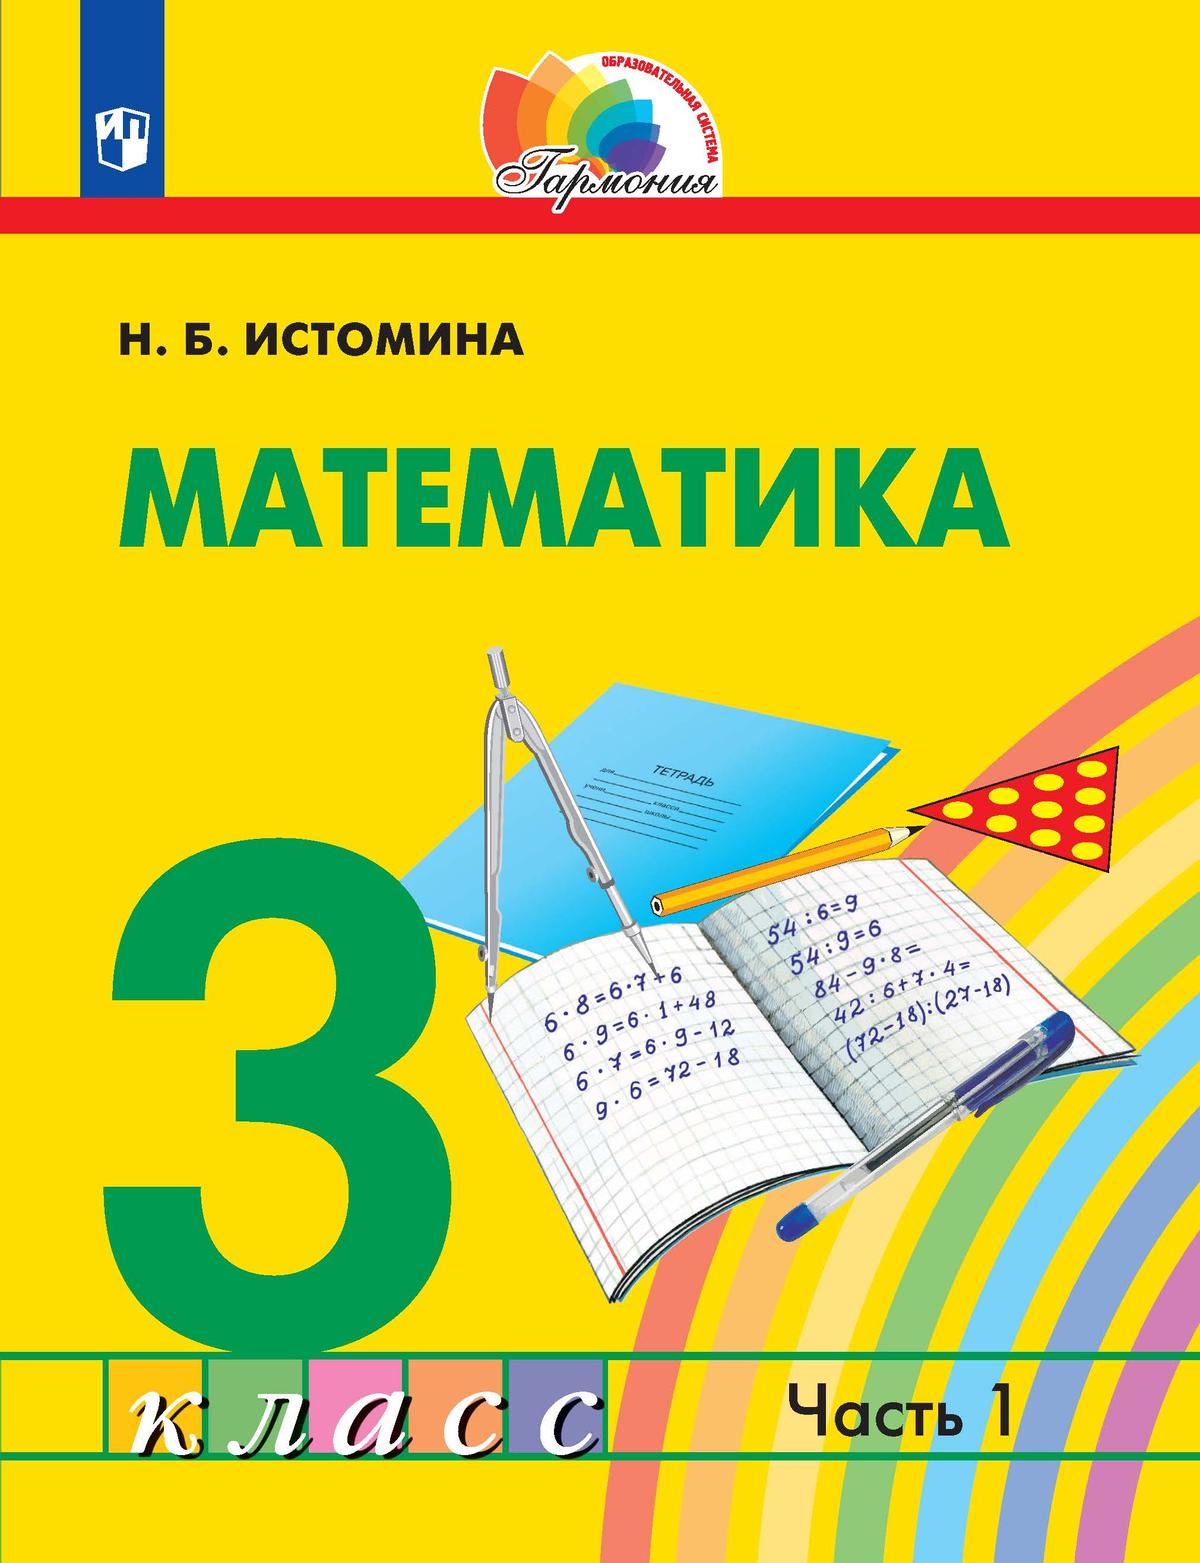 Математика. 3 класс. Электронная форма учебника. В 2 ч. Часть 1 1